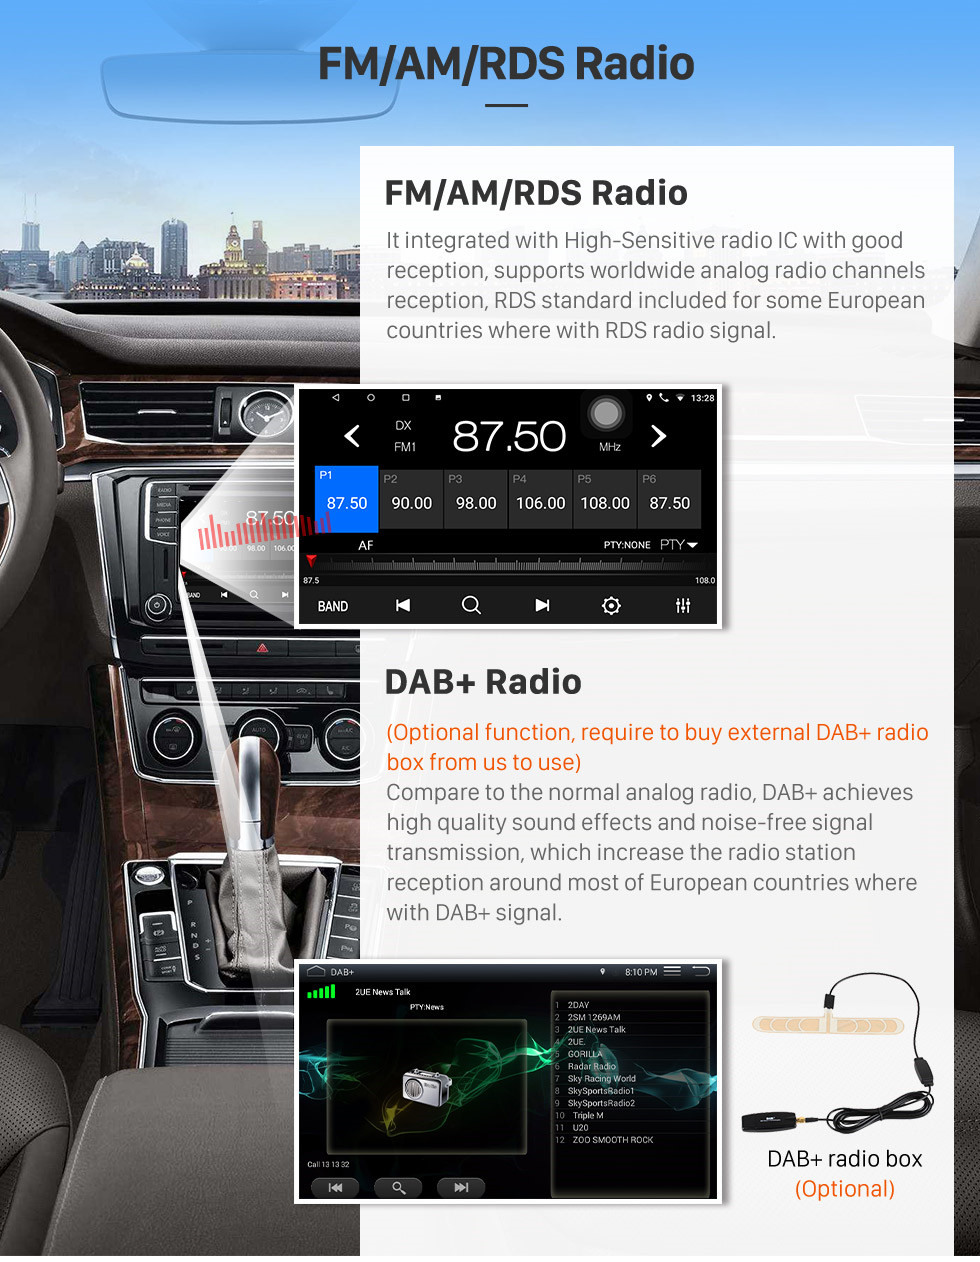 Seicane 2007-2017 KIA Sportage Auto A / C Android 10.0 Radio Bluetooth GPS Système de navigation auto stéréo avec WIFI AUX FM Prise en charge DVR Caméra de recul TPMS OBD2 3G